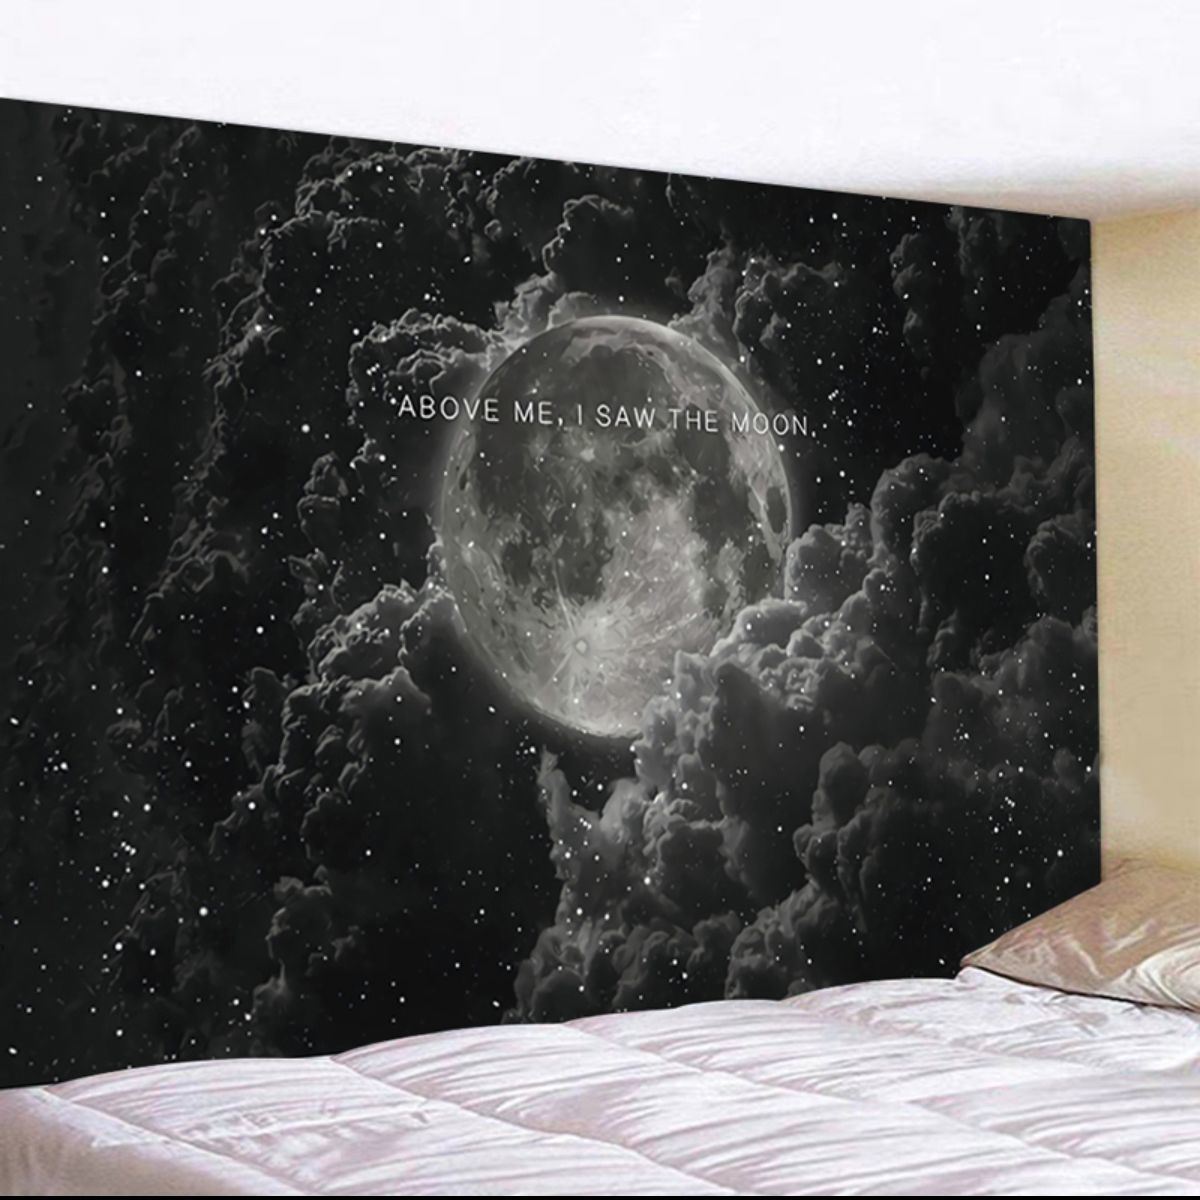 壁掛佈/背景佈 黑白簡約月球星空牆布裝飾掛毯北歐ins床頭臥室遮擋超大背景掛布『XY27712』